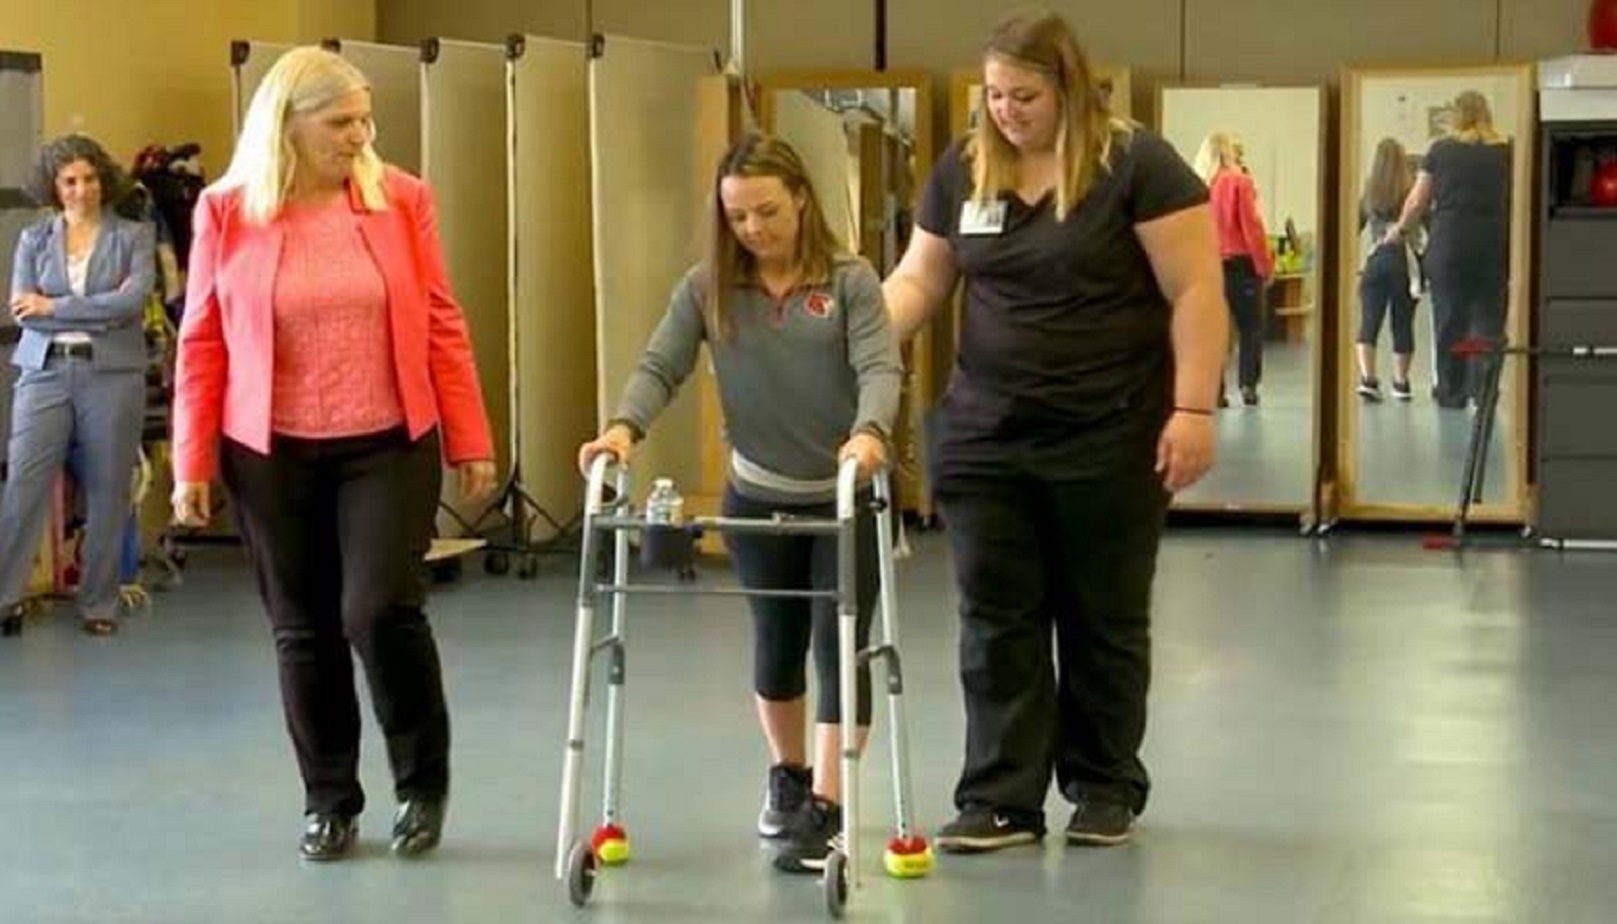 زراعة النخاع الشوكي تساعد المرضى المصابين بالشلل على المشي مرة أخرى.